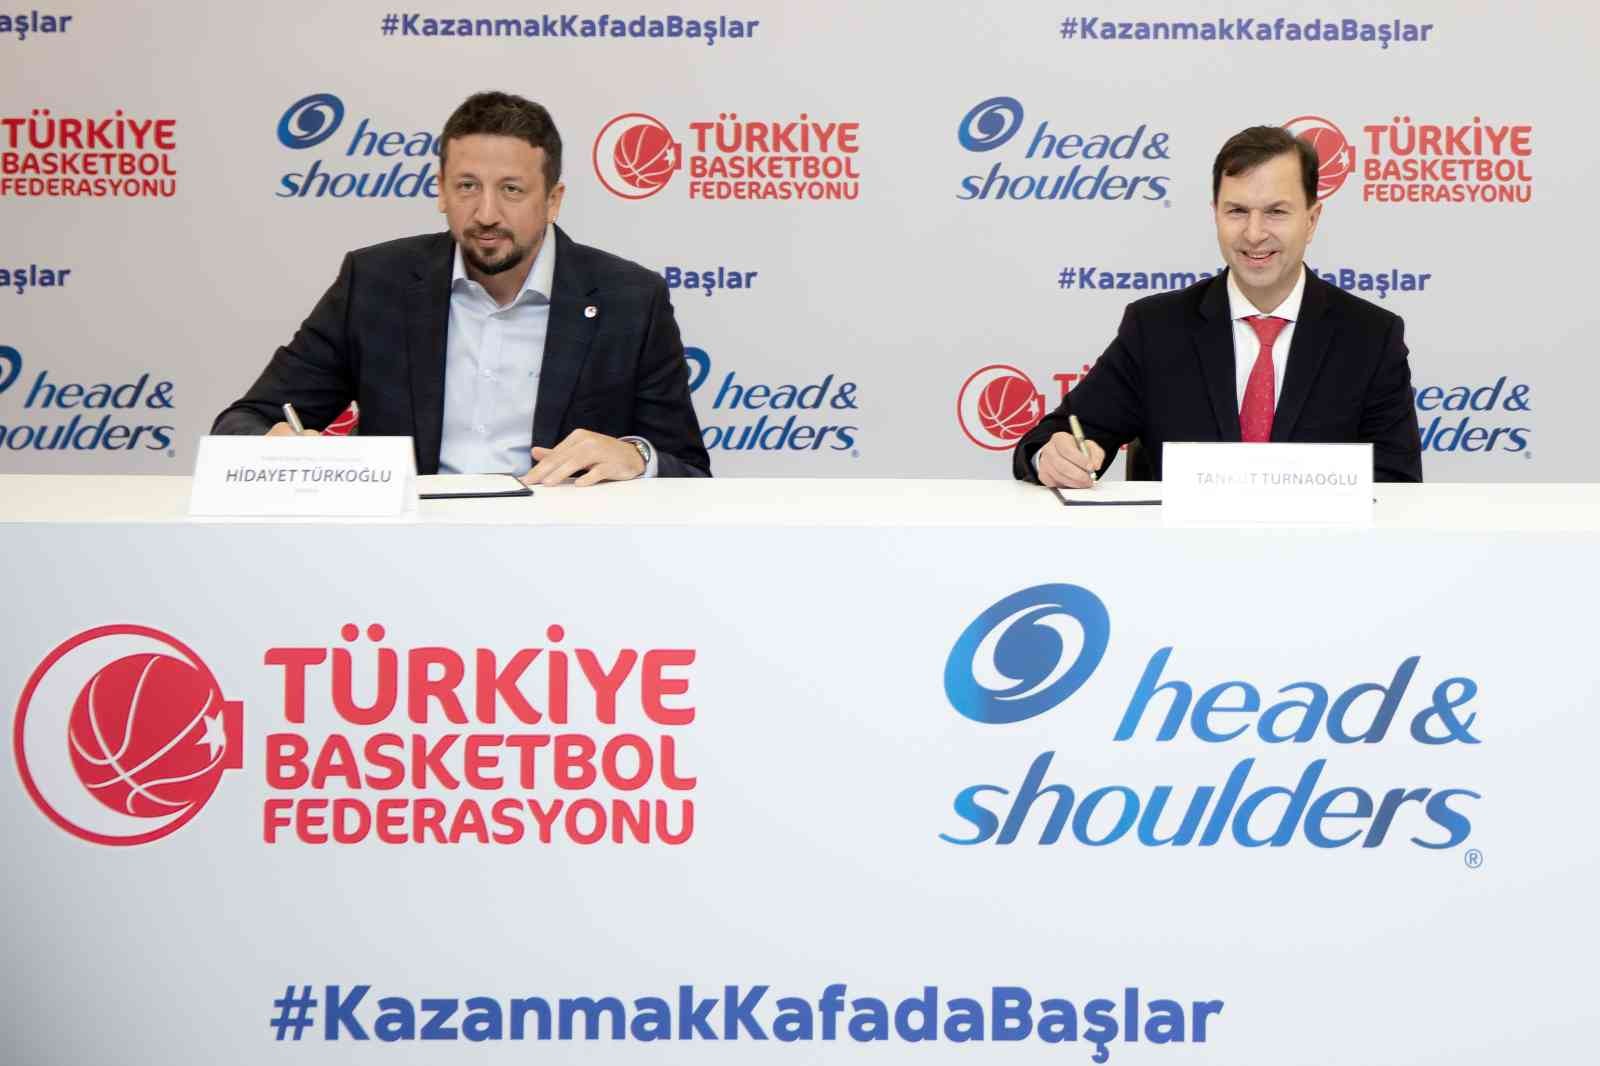 Türkiye Basketbol Federasyonu Başkanı Hidayet Türkoğlu ve P&G Türkiye, Kafkasya ve Orta Asya Yönetim Kurulu Başkanı Tankut Turnaoğlu’nun ...